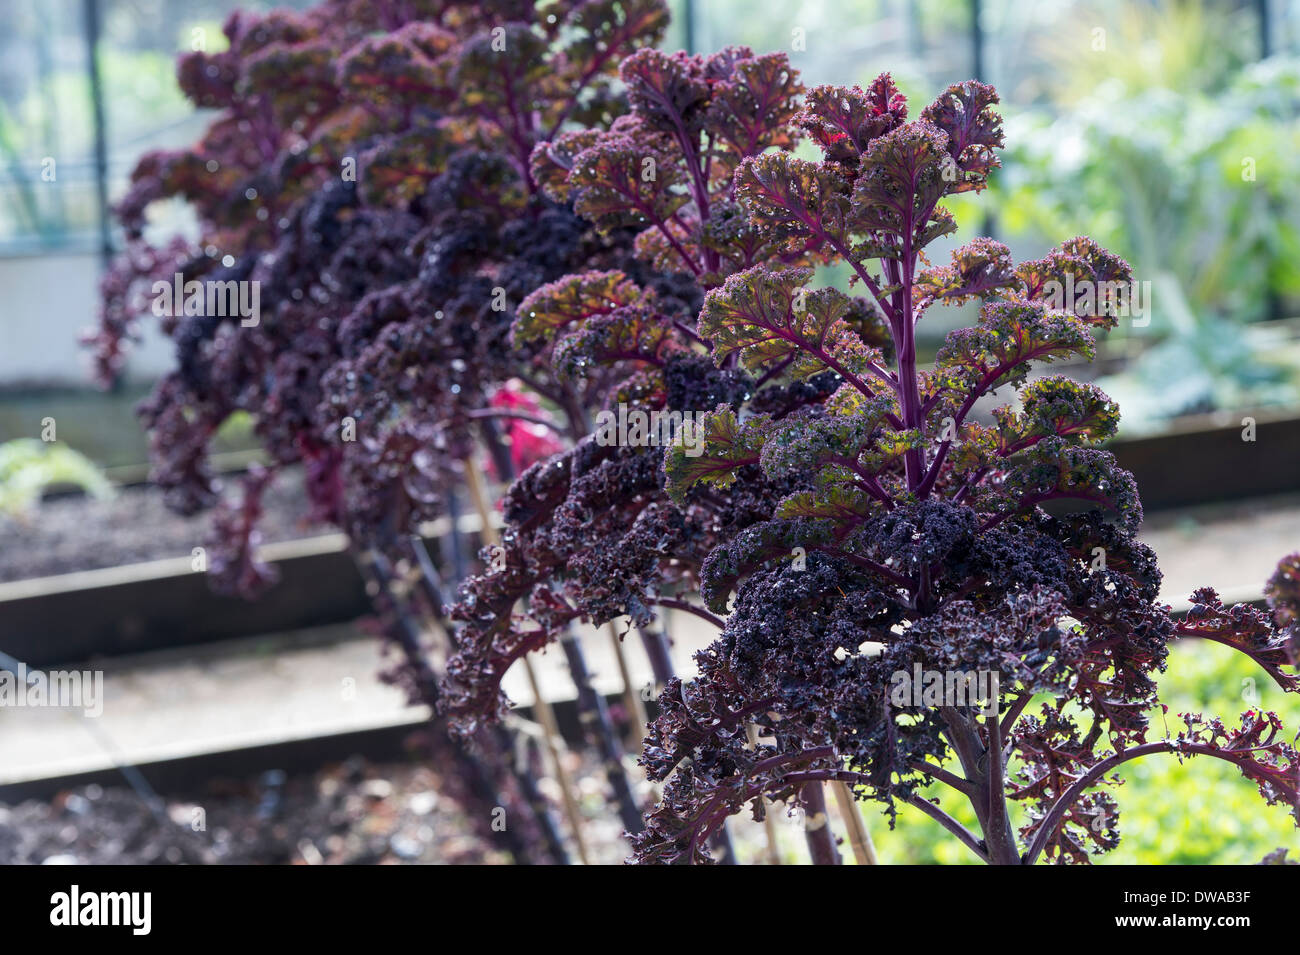 Kale Redbor in a vegetable garden Stock Photo